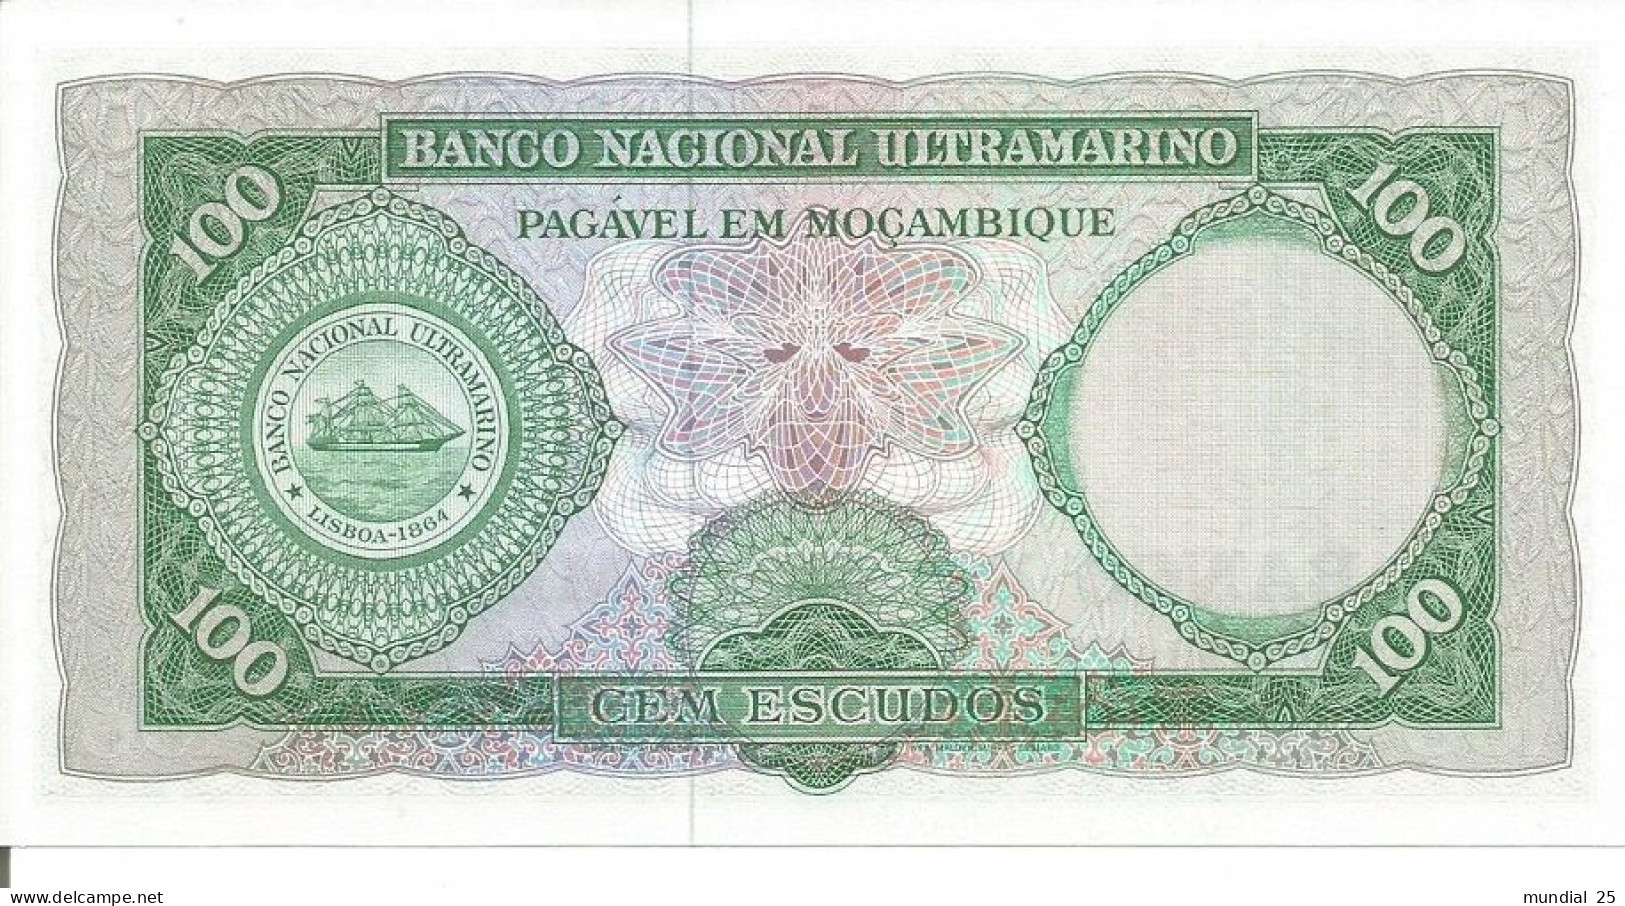 MOZAMBIQUE 100$00 ESCUDOS N/D (1976 - OLD DATE 27/03/1961) - Mozambique